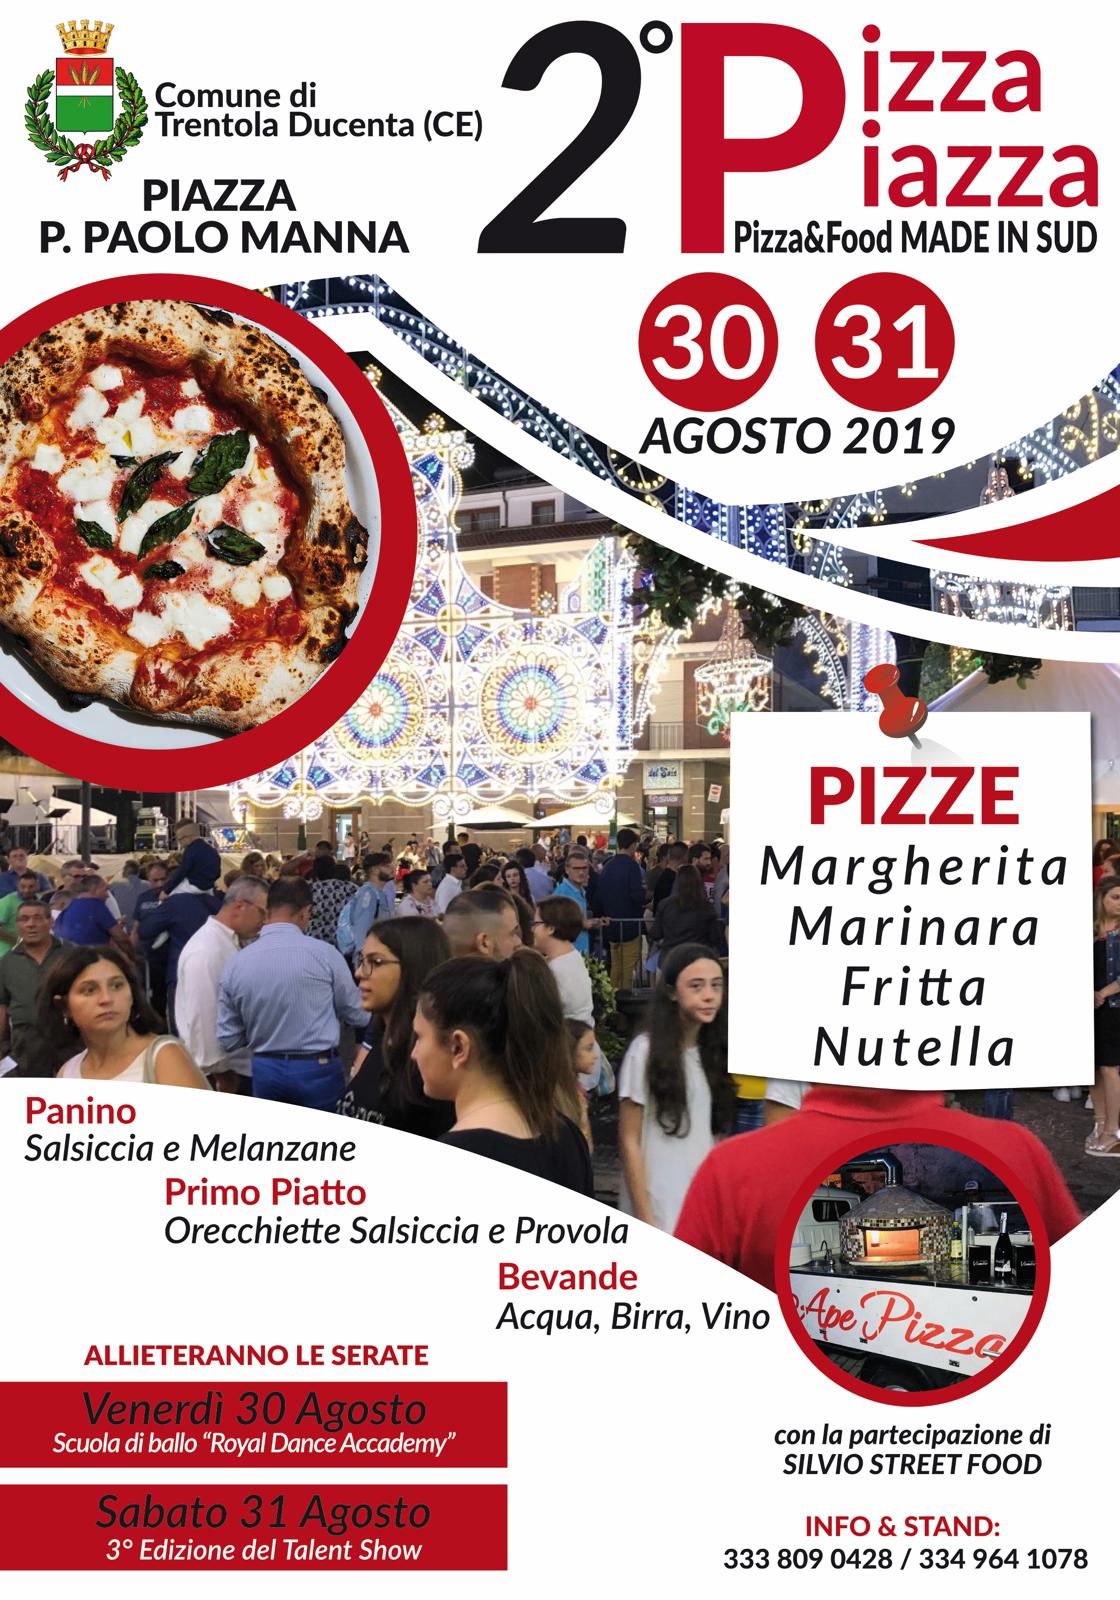 Comitato Festeggiamenti San Giorgio Martire: due giorni per la II edizione del “Pizza Piazza”
